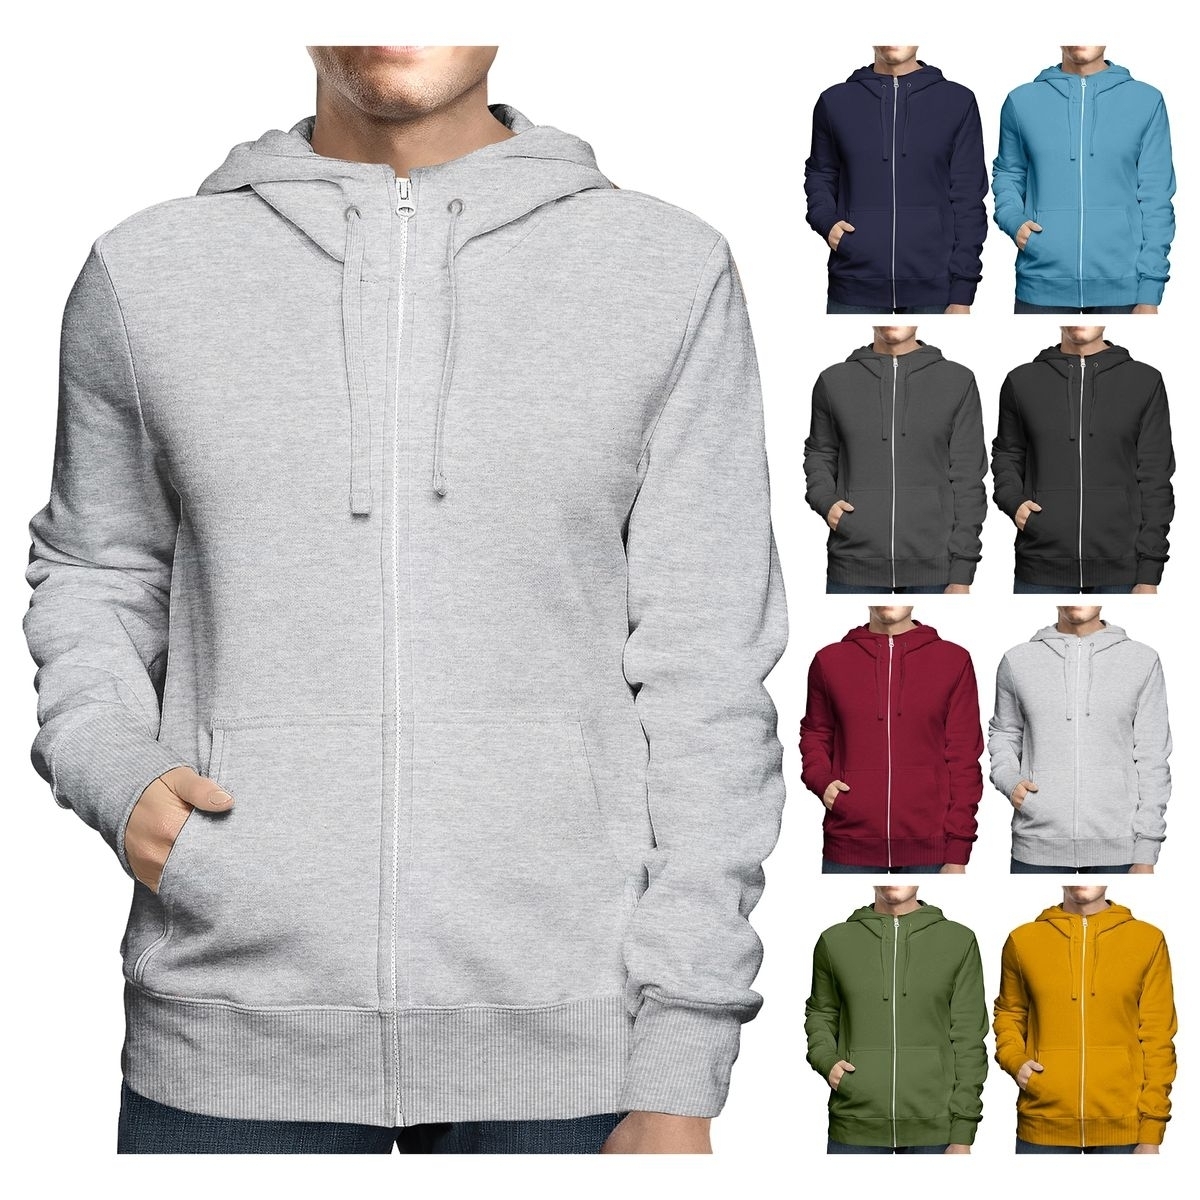 Men's Big & Tall Winter Warm Soft Cozy Full Zip-Up Fleece Lined Hoodie Sweatshirt - Grey, X-Large